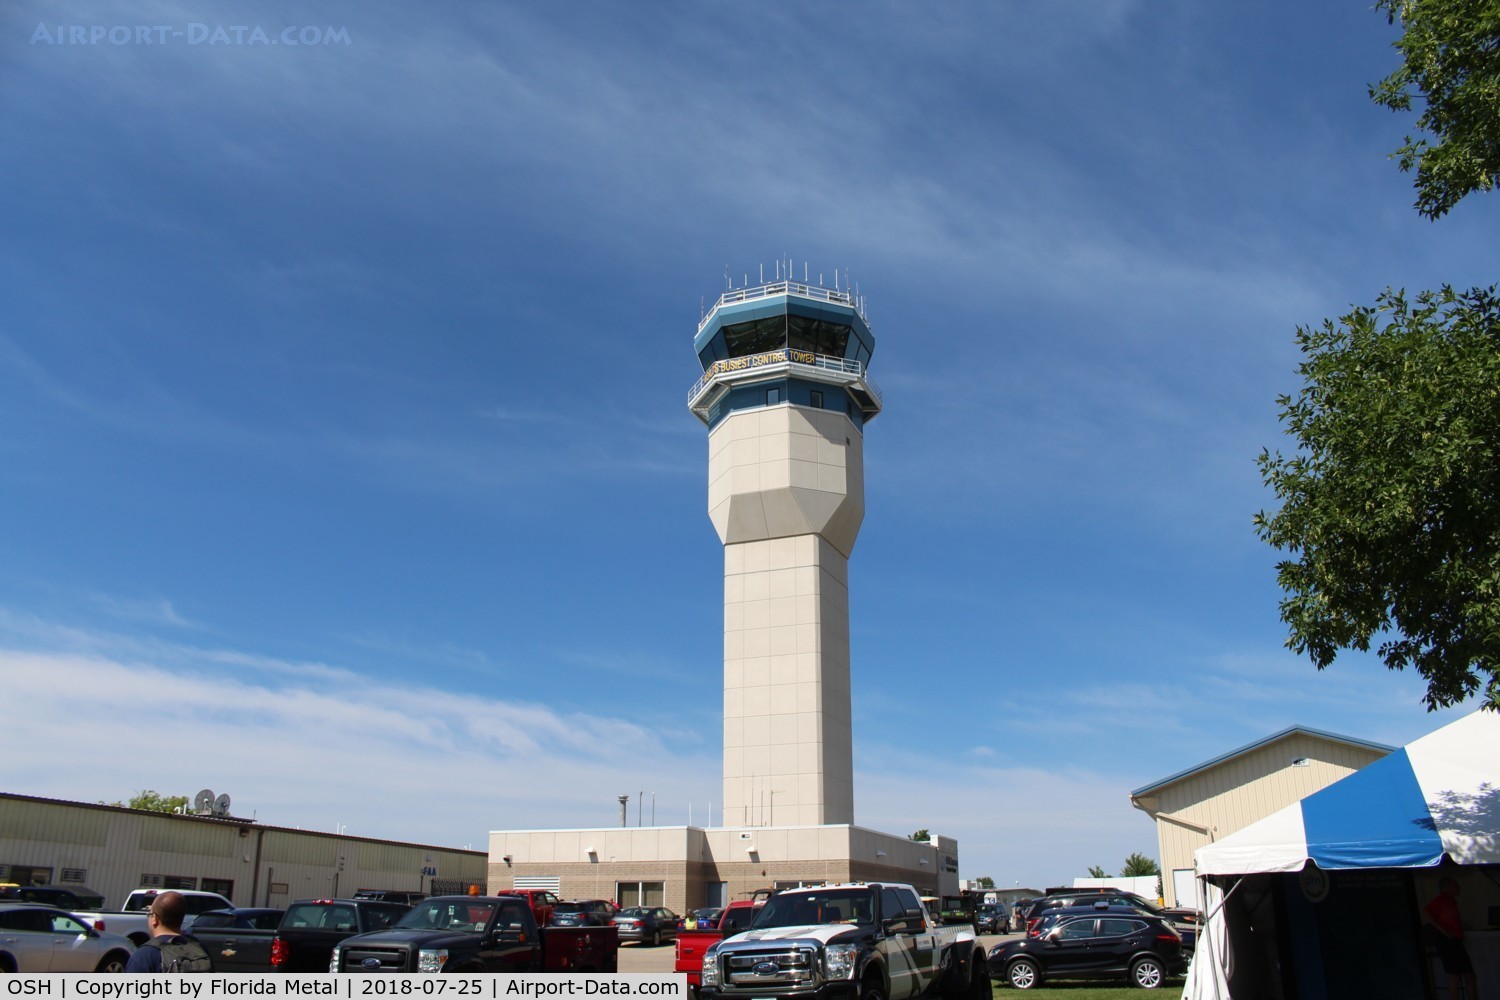 Wittman Regional Airport (OSH) - Tower